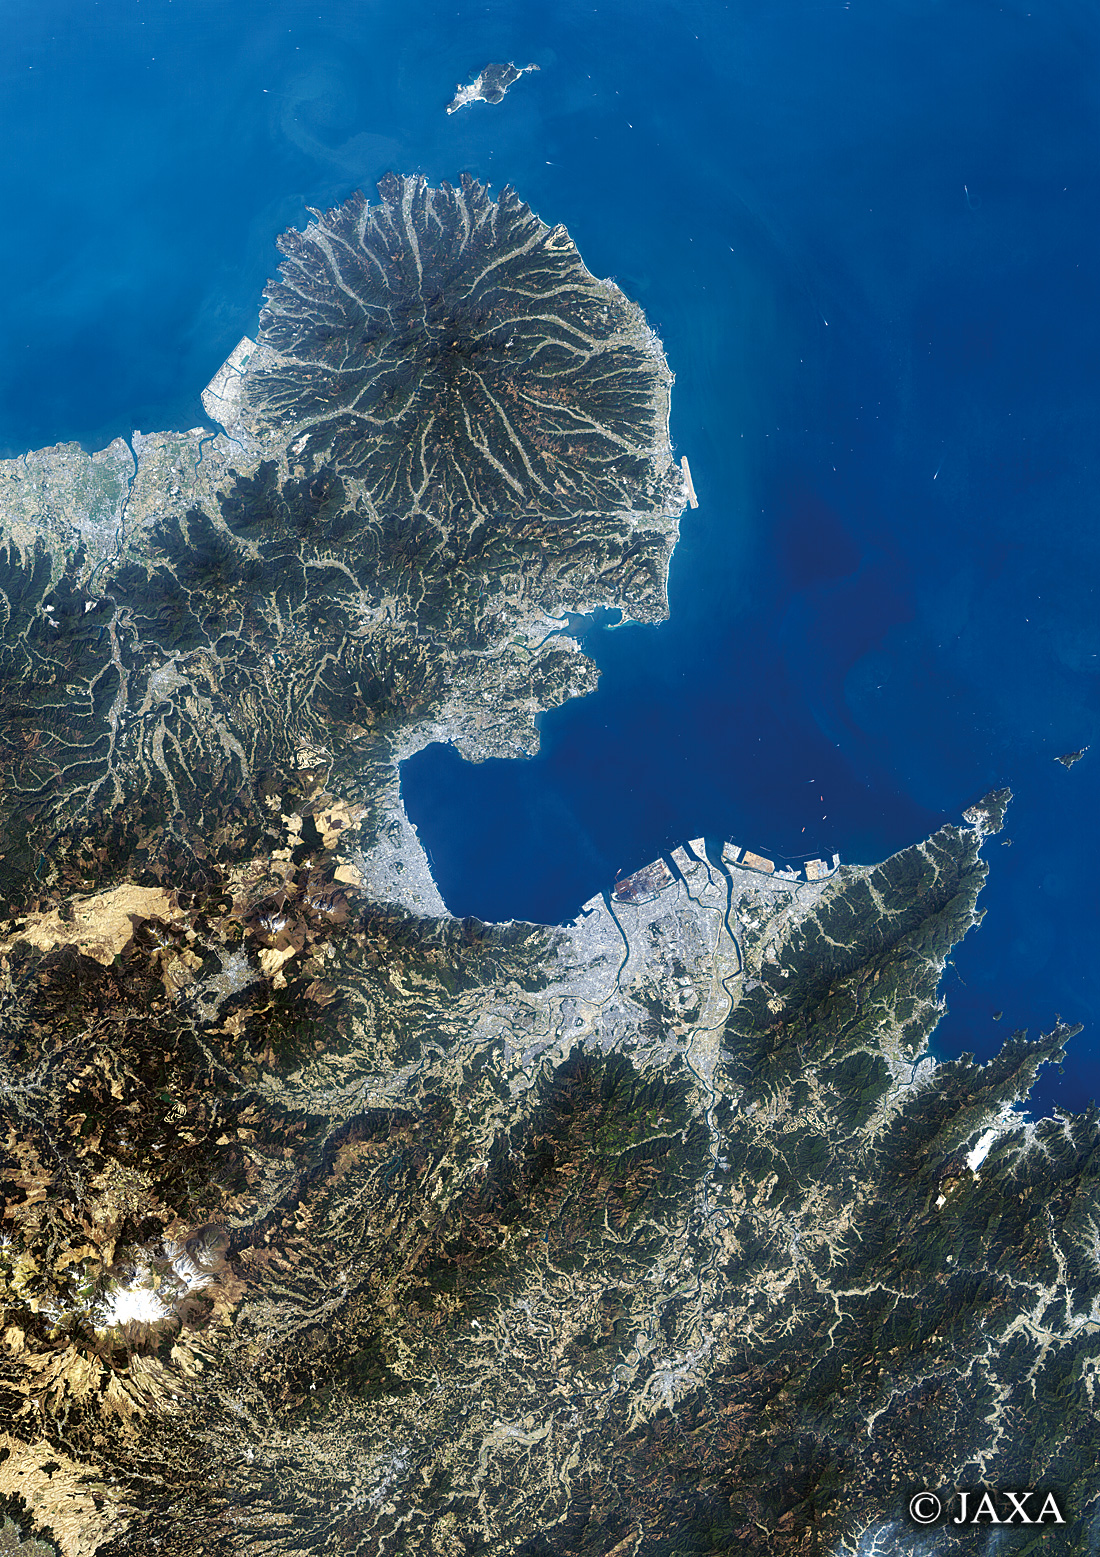 だいちから見た日本の都市 国東半島:衛星画像